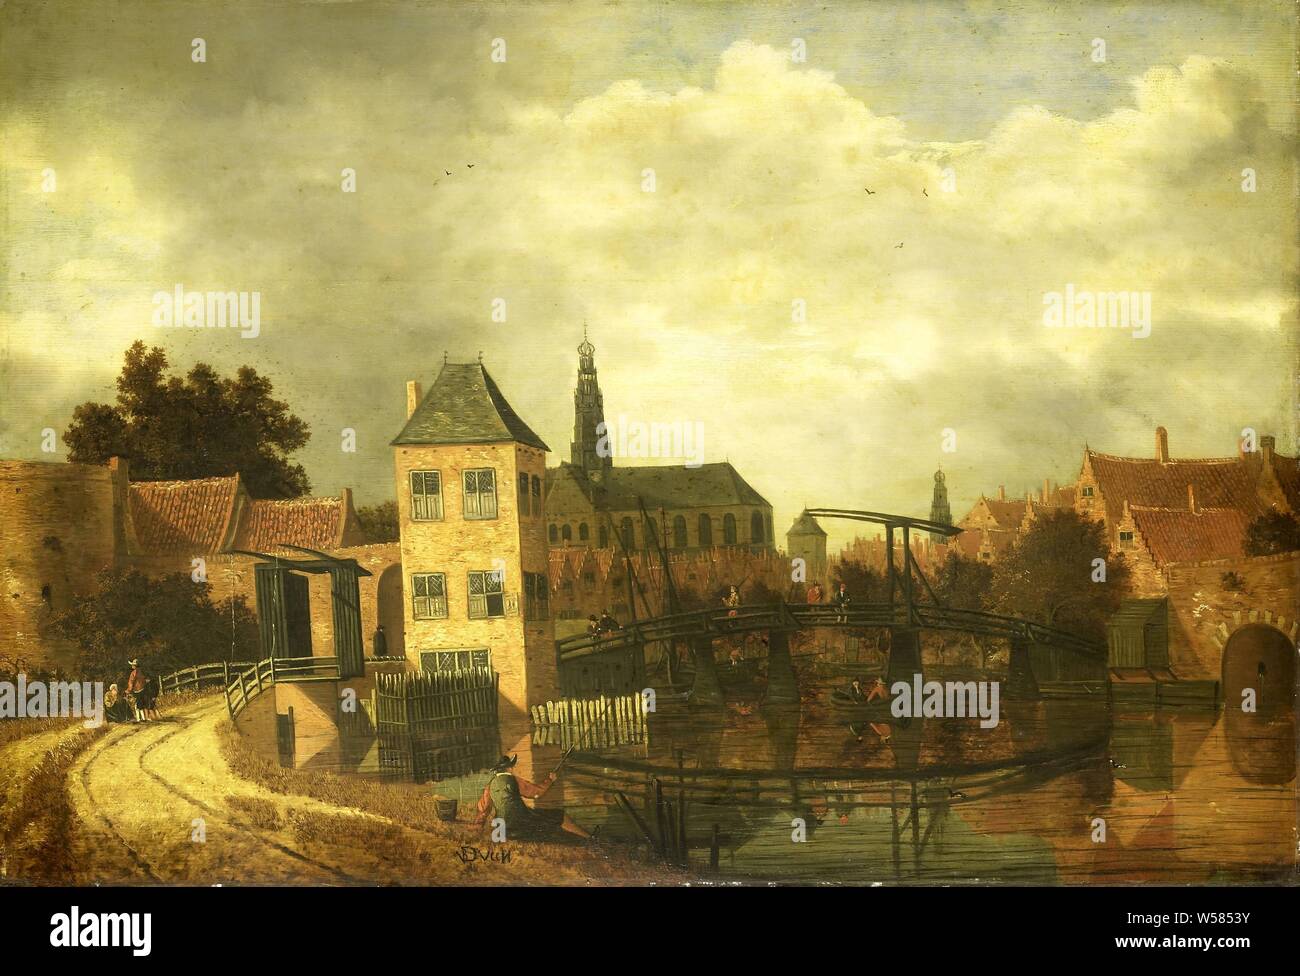 Vue de la ville de Haarlem, les tâches de la rivière Spaarne, montrant le Eendjespoort, vue de la ville de Haarlem sur la Spaarne à l'Eendjespoort. Derrière la porte en bois d'un pont-levis, au premier plan un homme est la pêche., Balthasar van der Veen, ch. 1650 - c. 1659, tableau de bord, de la peinture à l'huile (peinture), support : h 75,3 cm × w 109,2 cm d 6,3 cm Banque D'Images